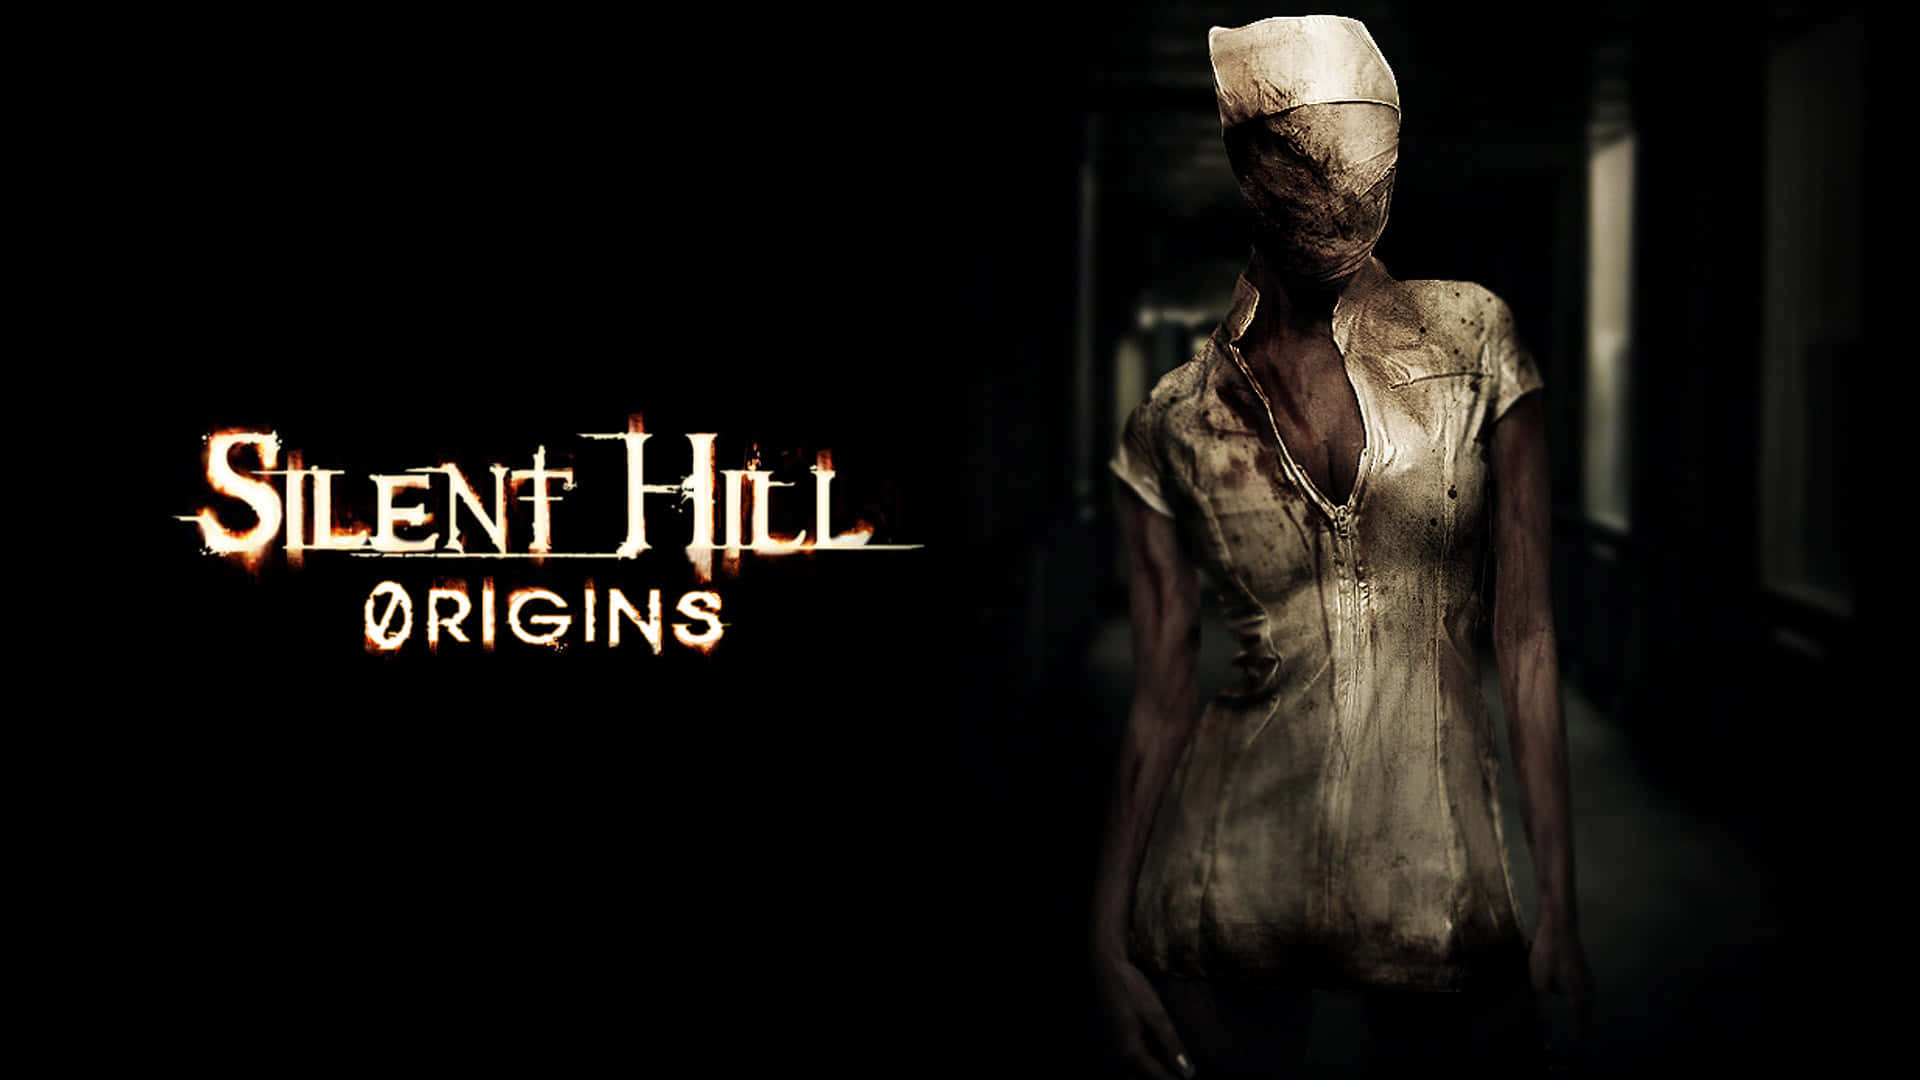 Ödsligastaden Silent Hill Avslöjar Skrämmande Hemligheter.